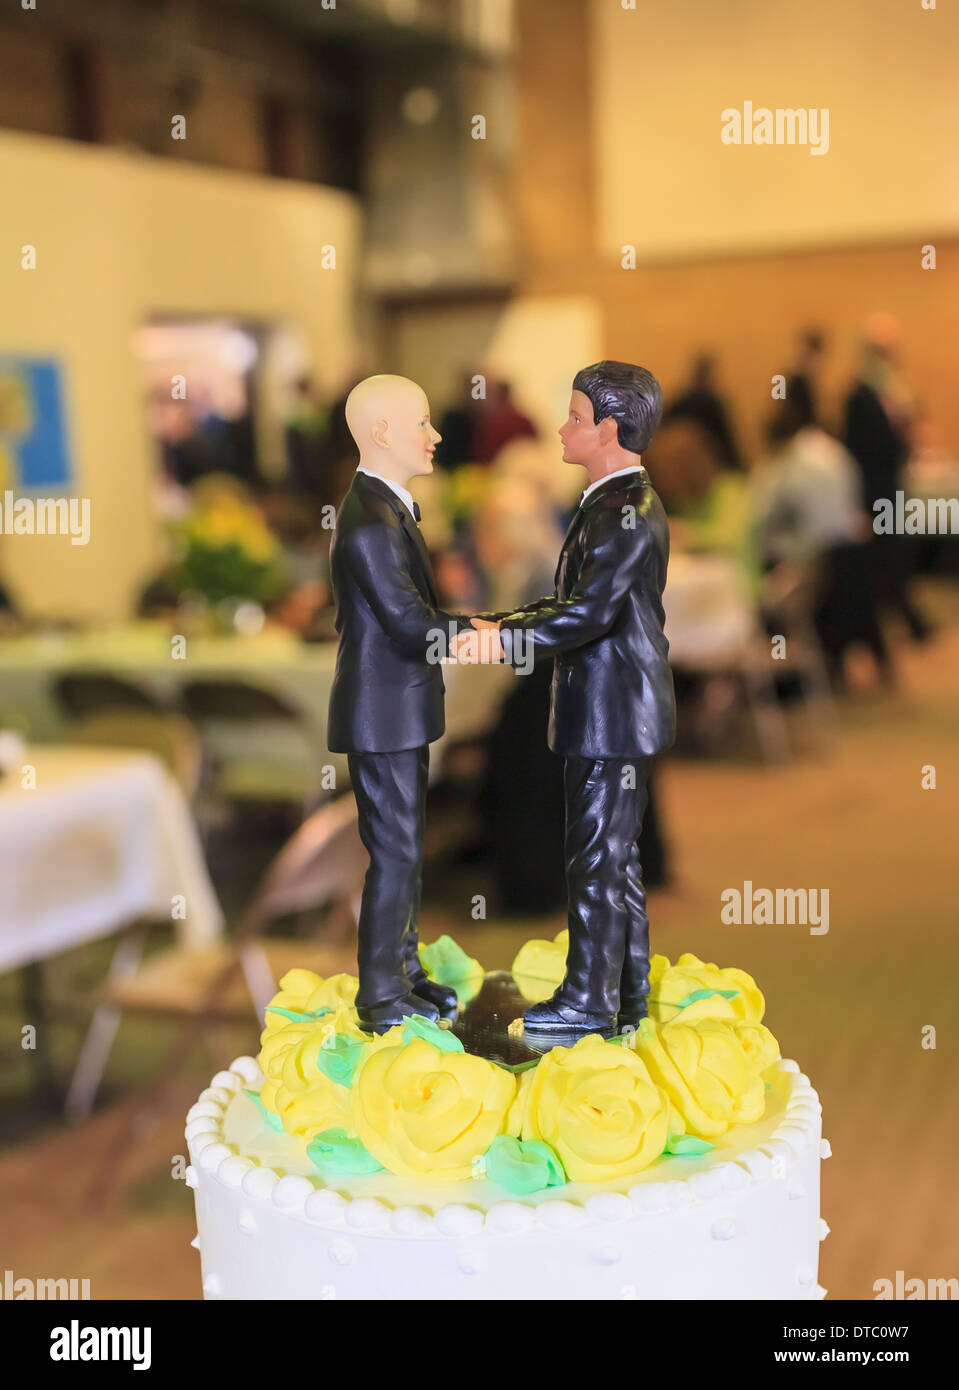 Zwei männliche Figuren auf Hochzeit Kuchen an der Rezeption Stockfoto